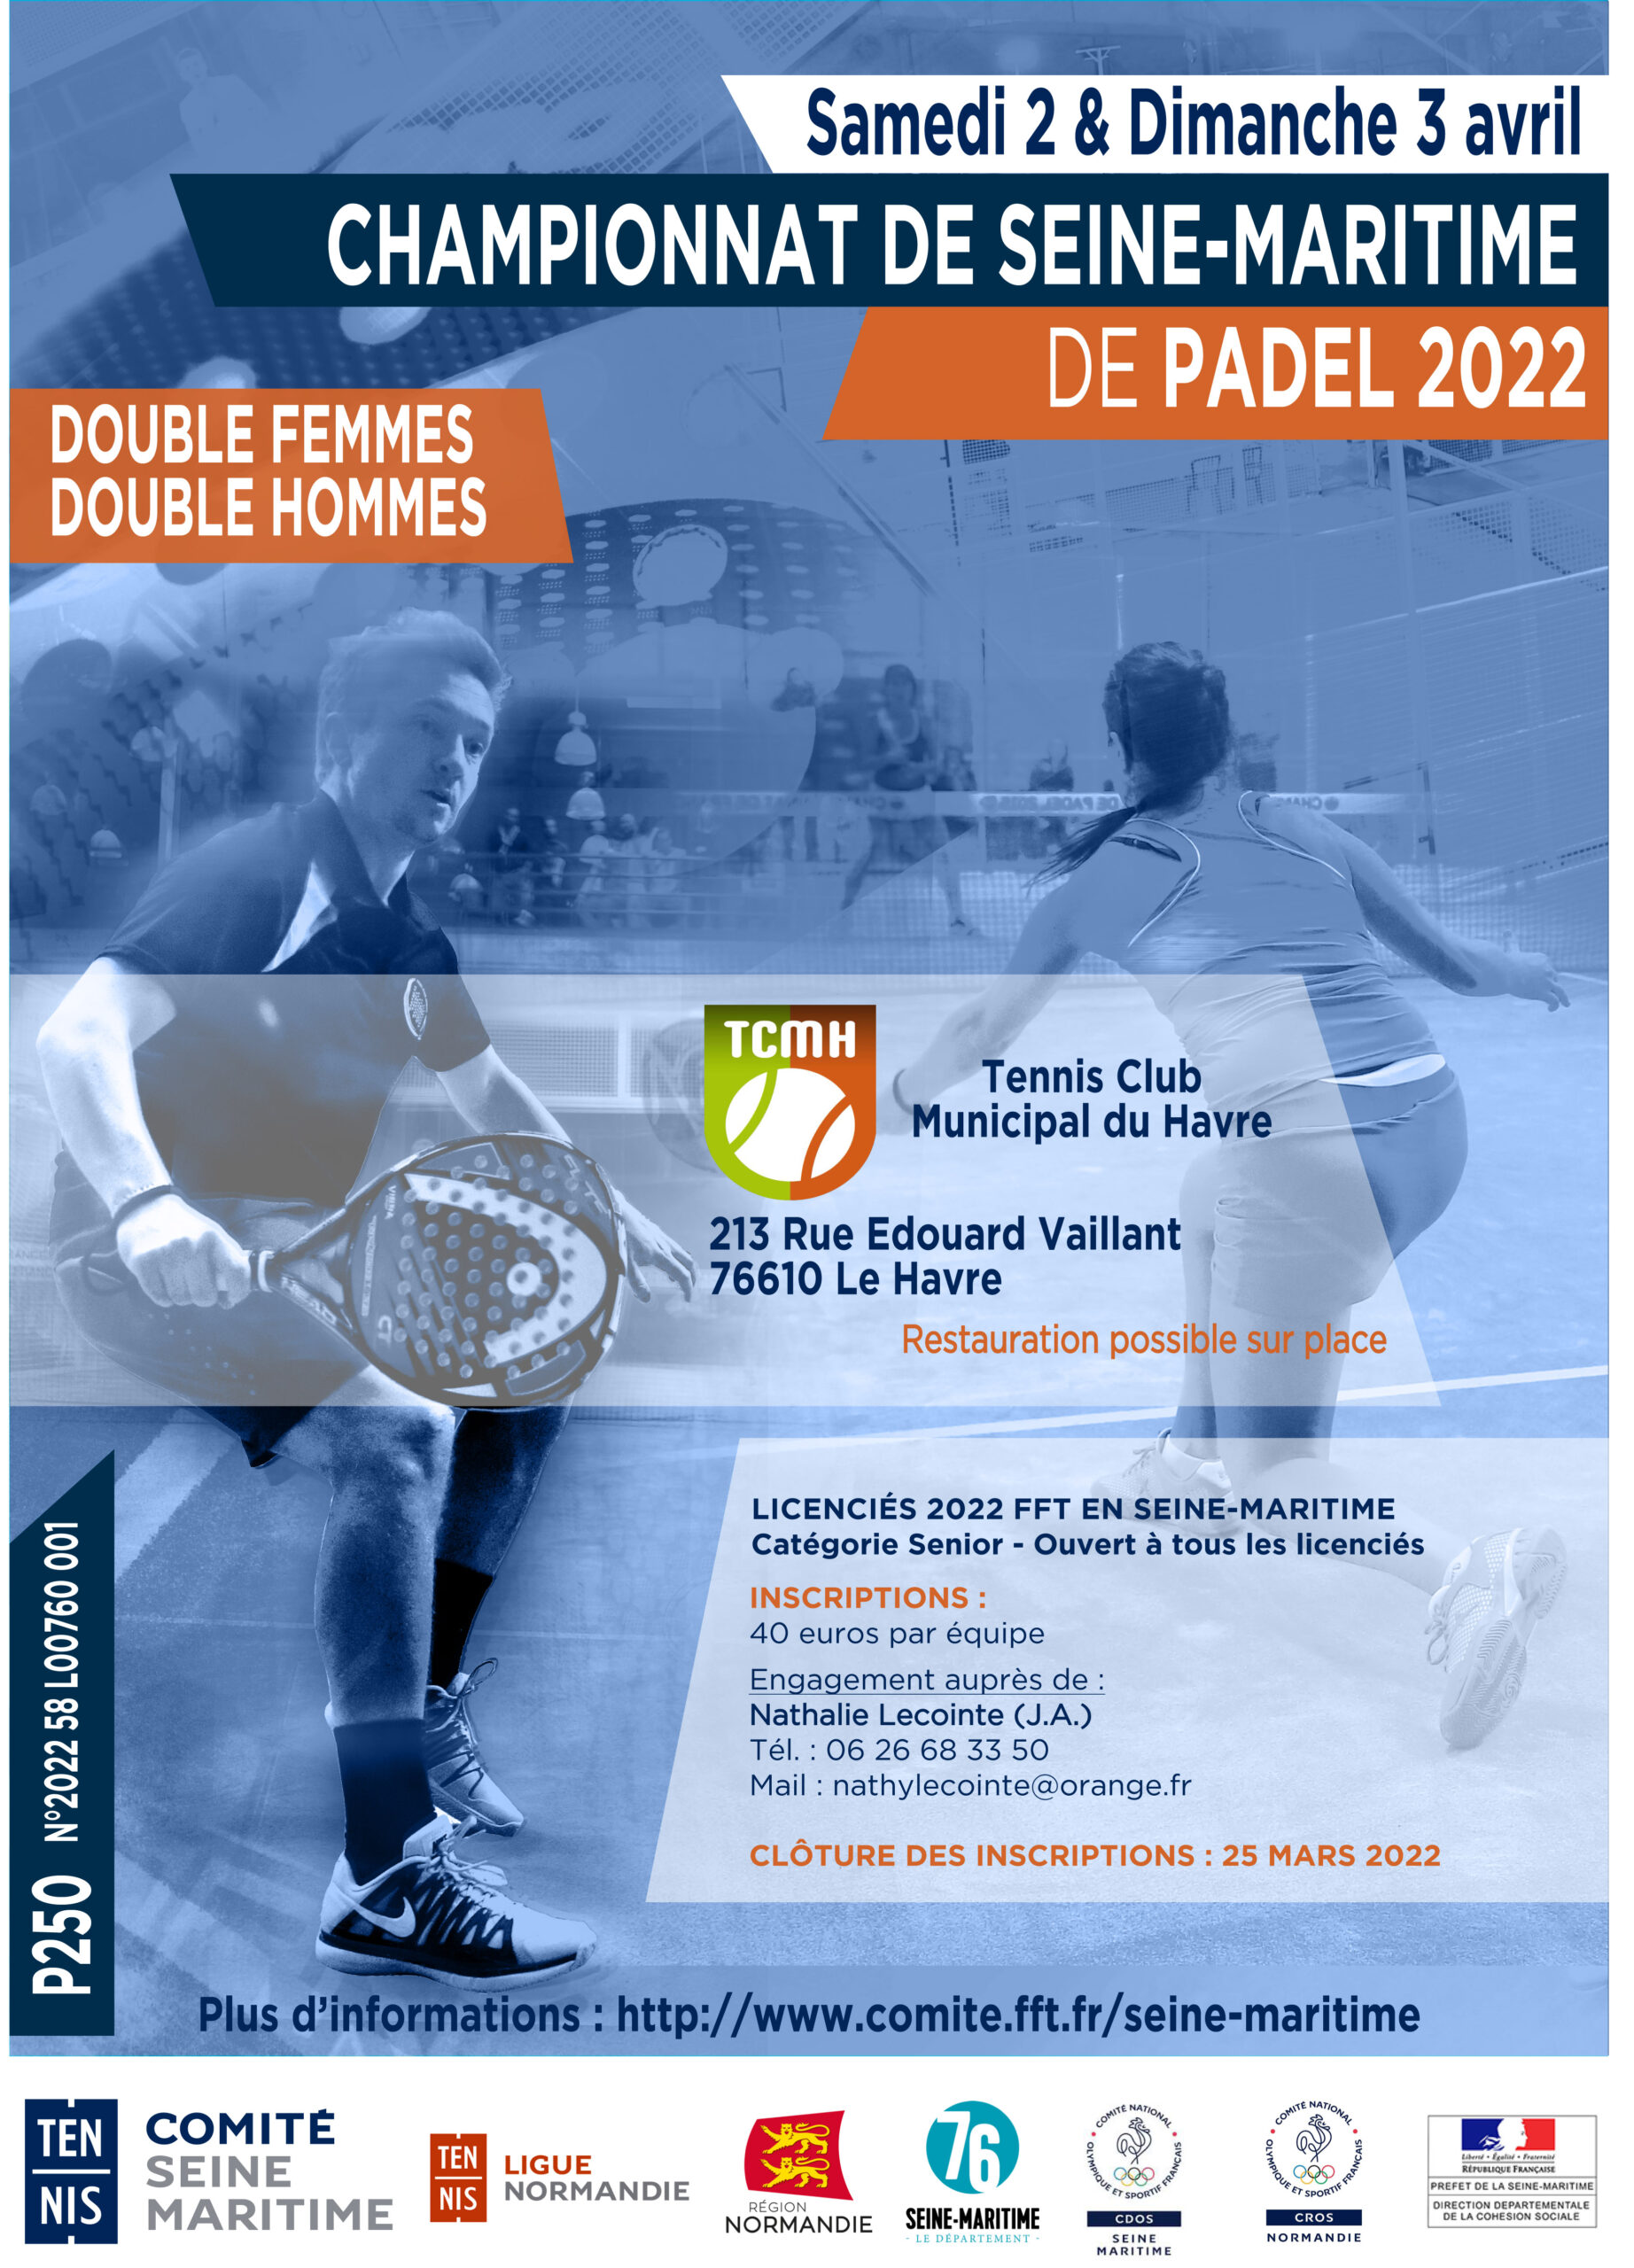 Uncategorized – TCMH – Tennis Club Municipal du Havre